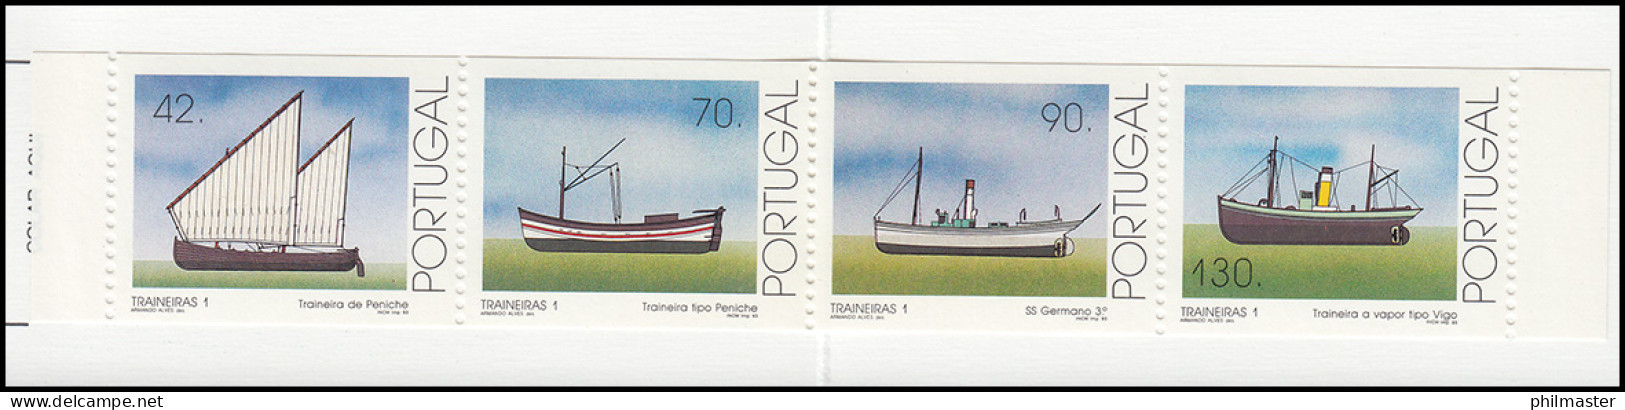 Portugal-Markenheftchen 10 Küstenfischerei Schleppnetzschiffe 1993, Postfrisch - Cuadernillos